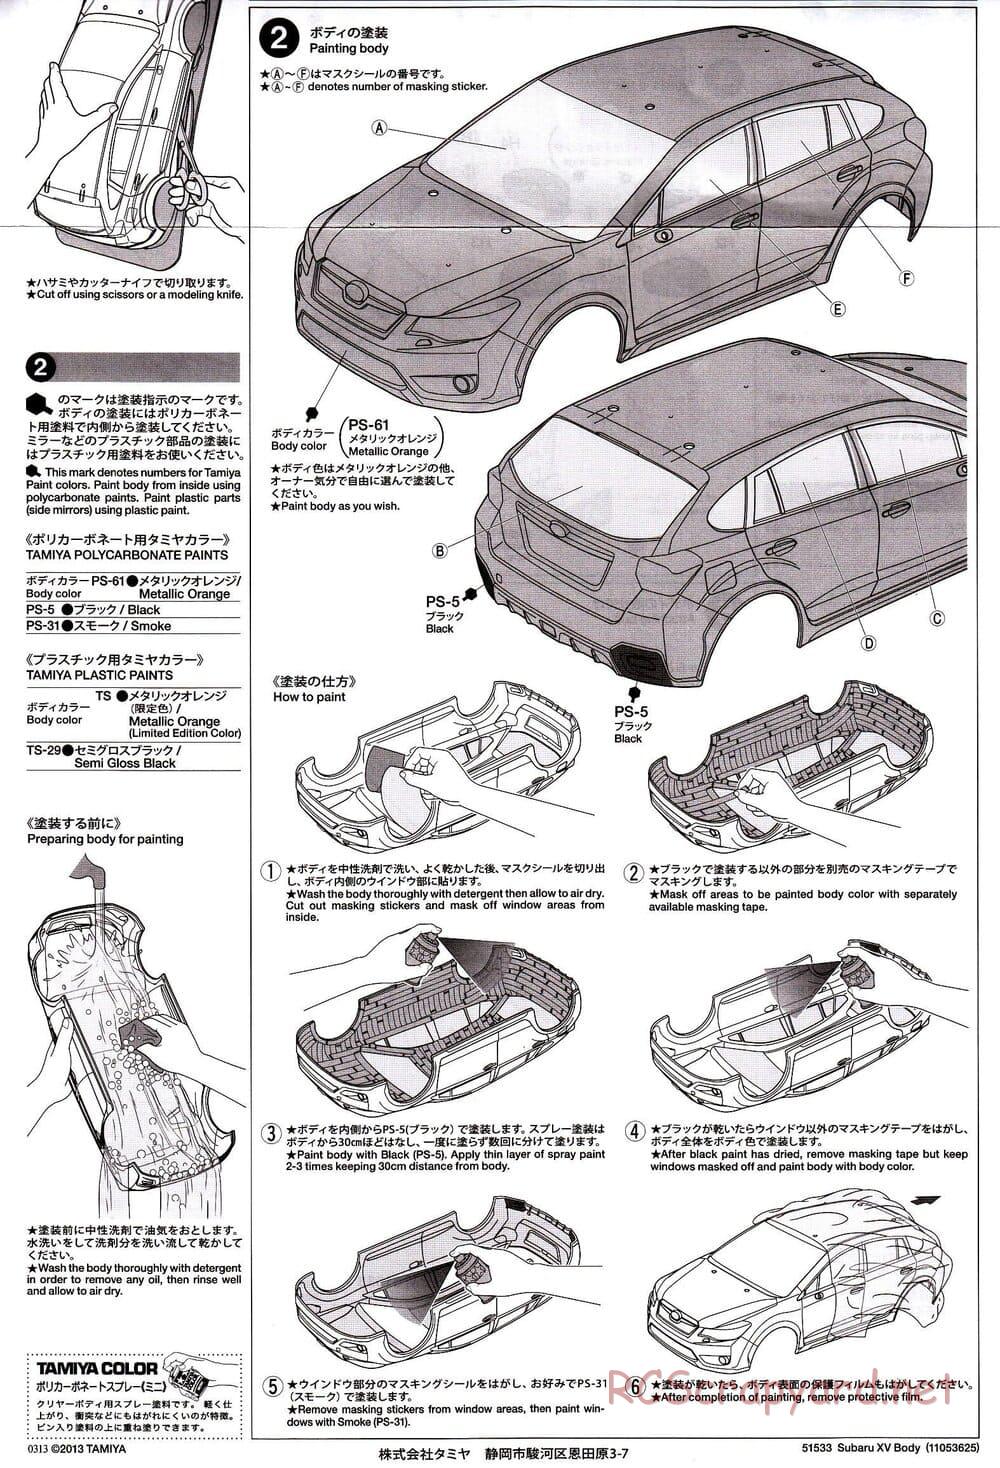 Tamiya - Subaru XV - XV-01 Chassis - Body Manual - Page 2